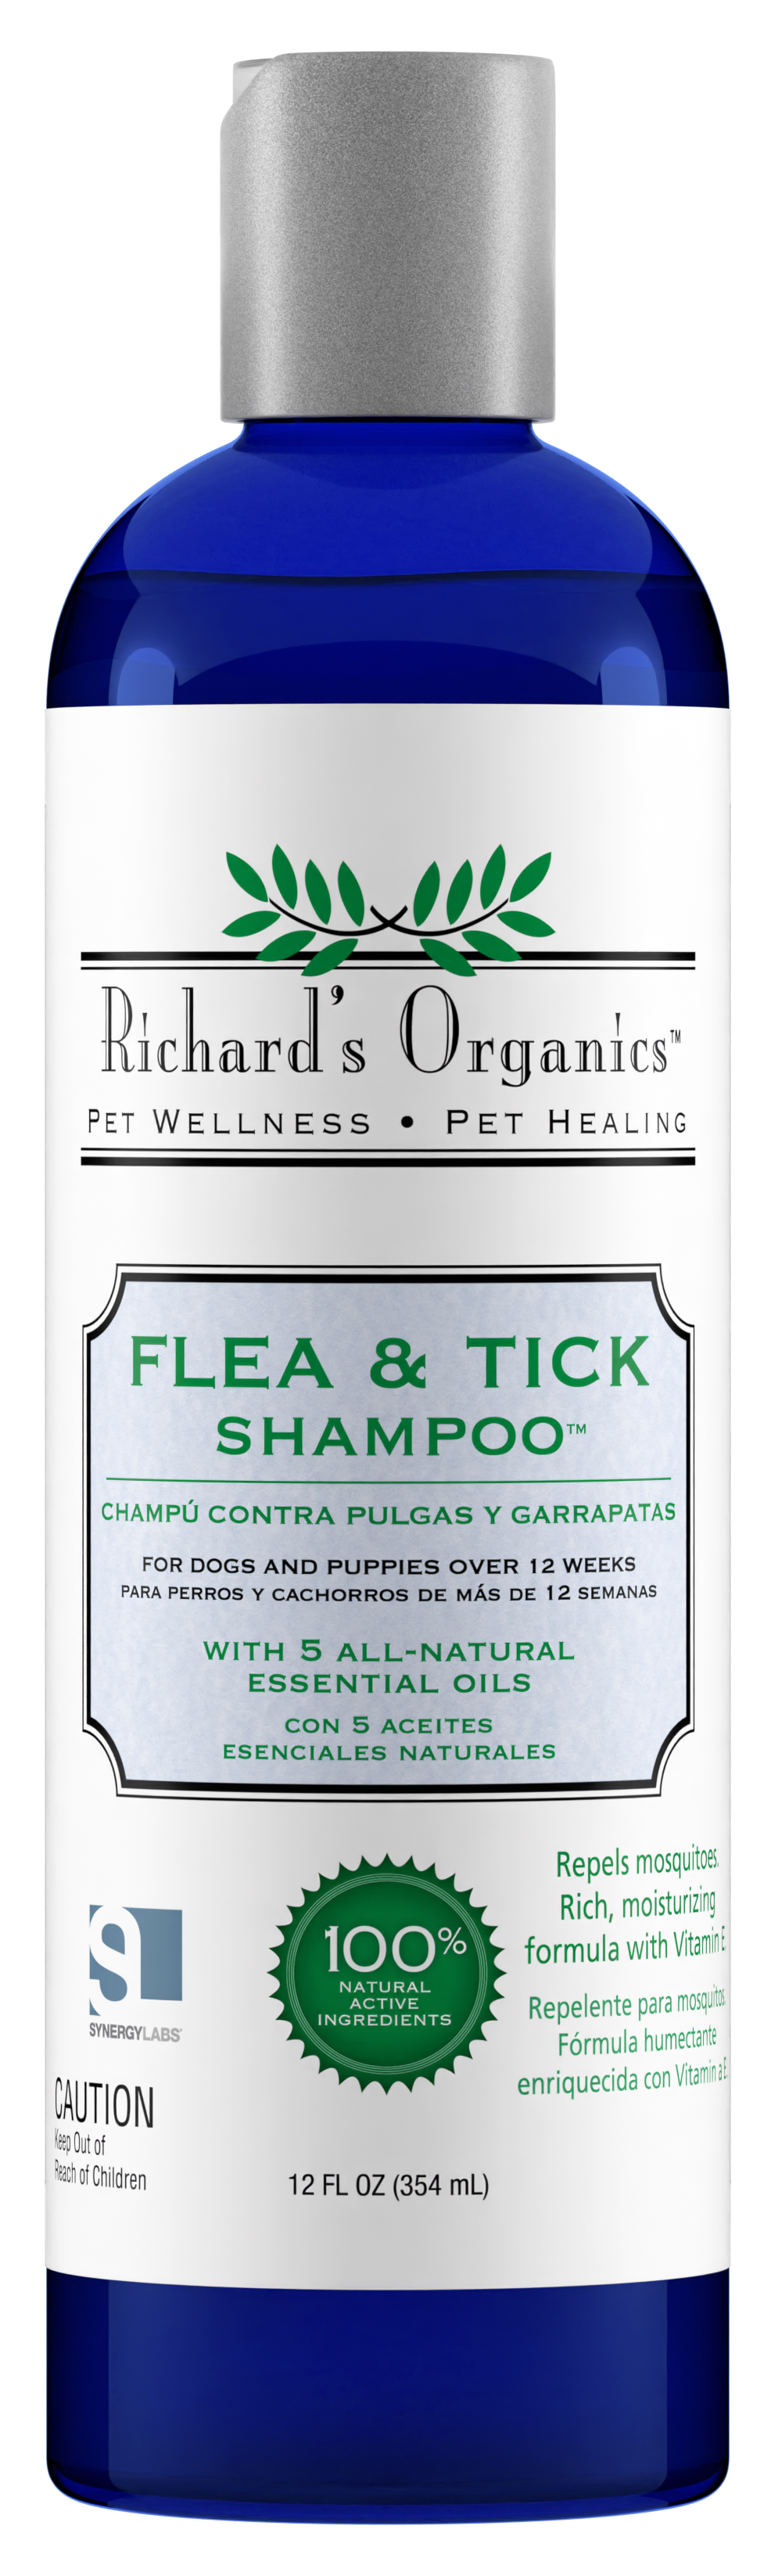 Flea & Tick Shampoo – SynergyLabs